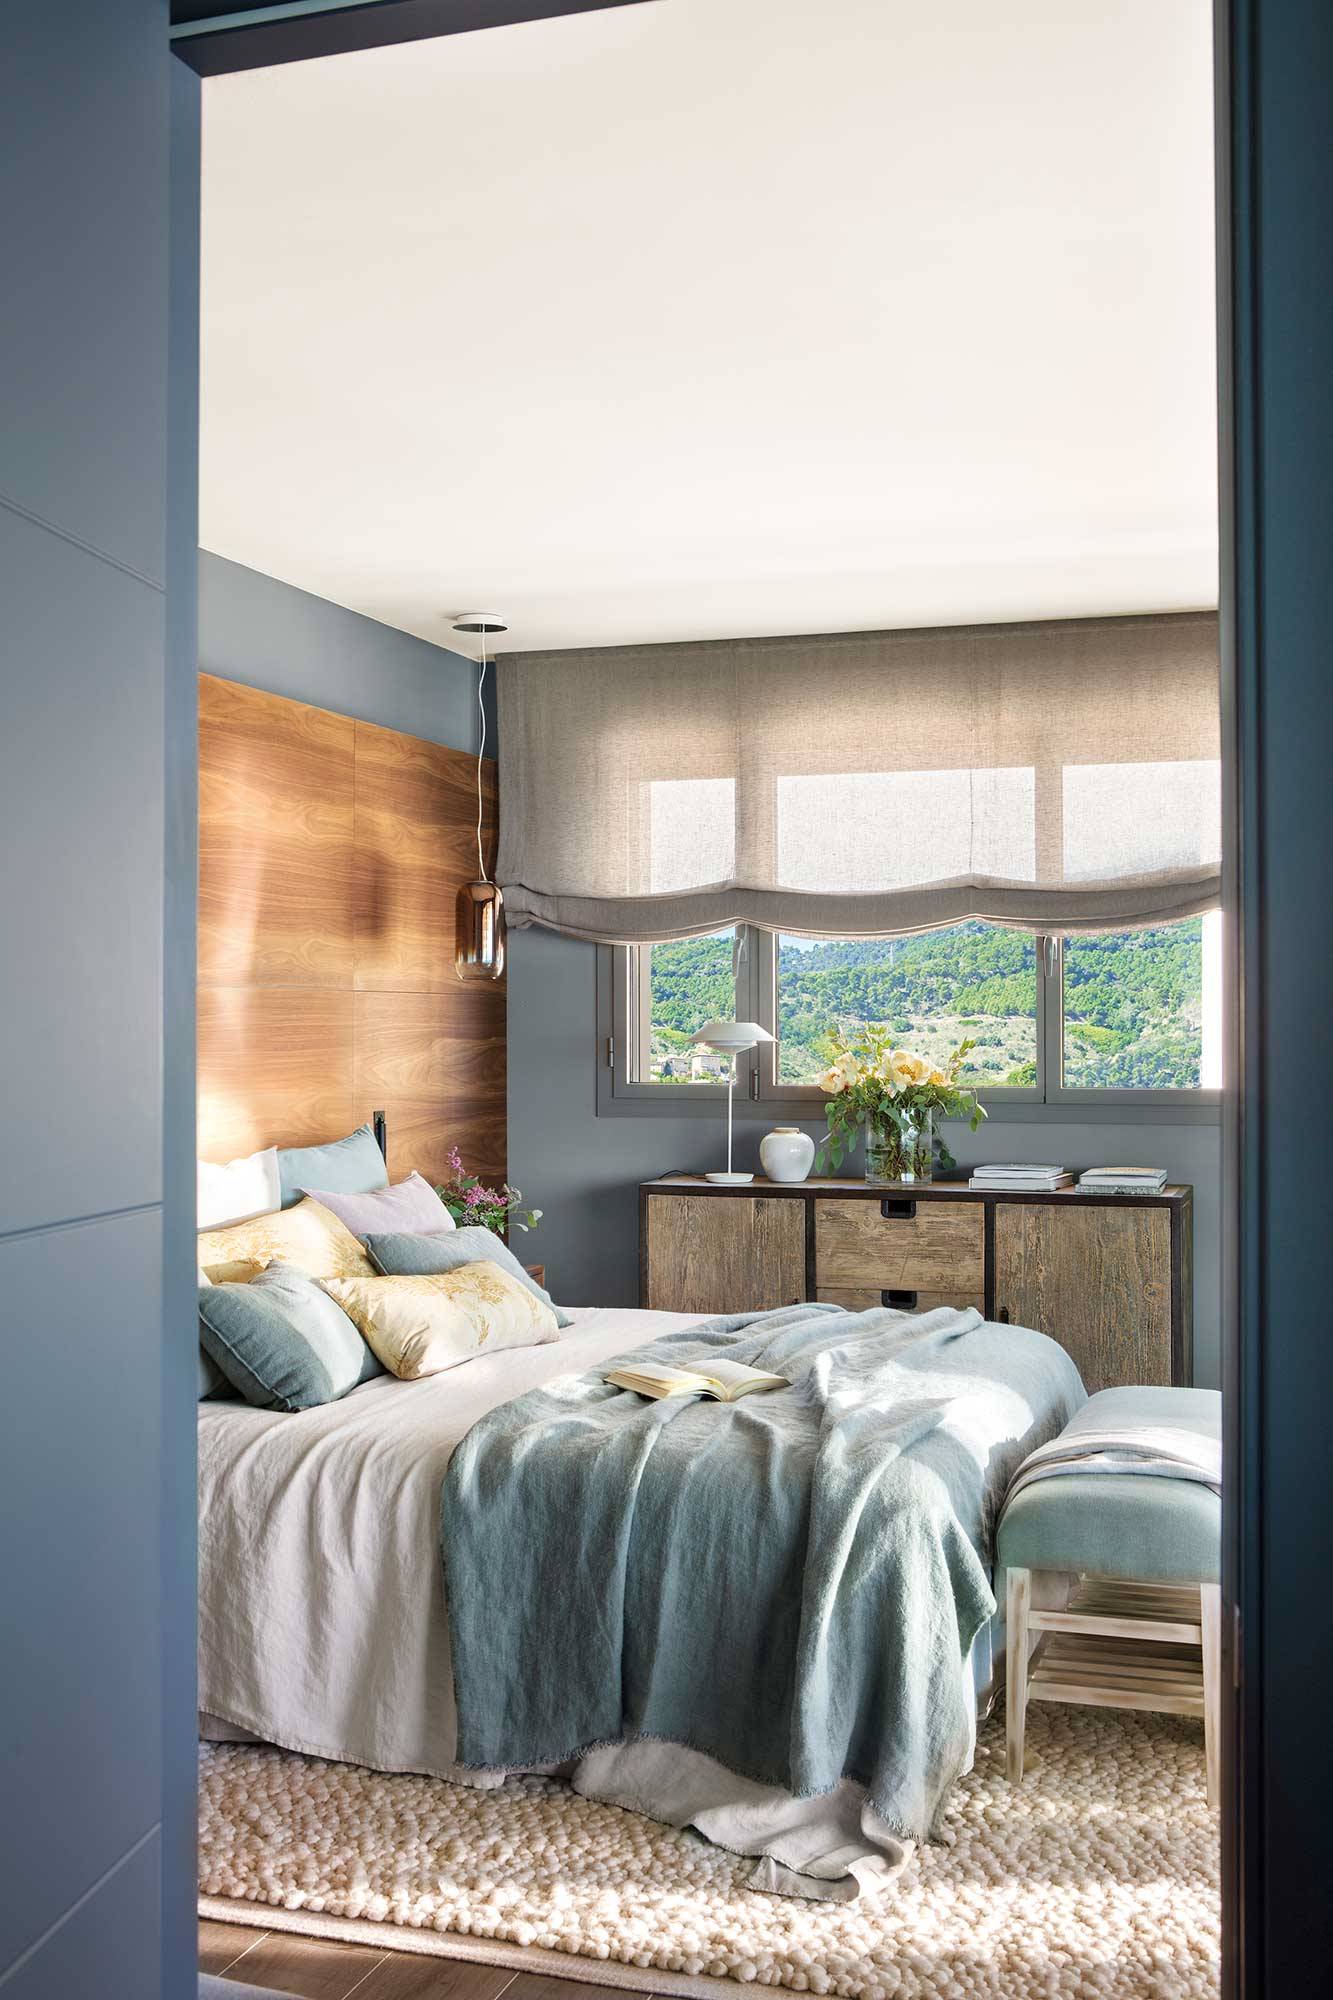 Dormitorio decorado en azul grisáceo con pared del cabecero en madera 00528781